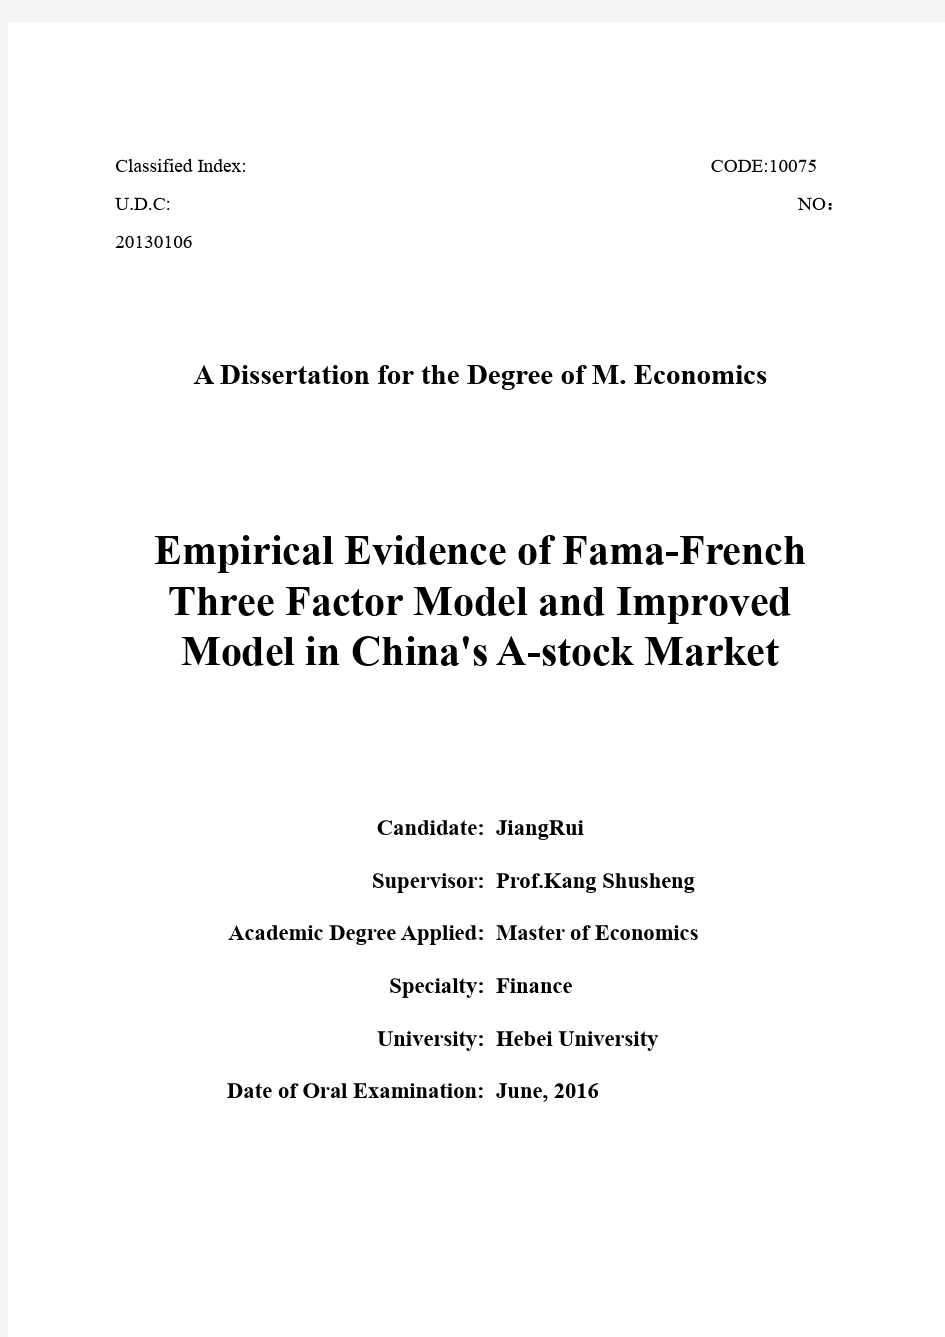 中国a股市场famafrench三因素模型实证及扩展研究